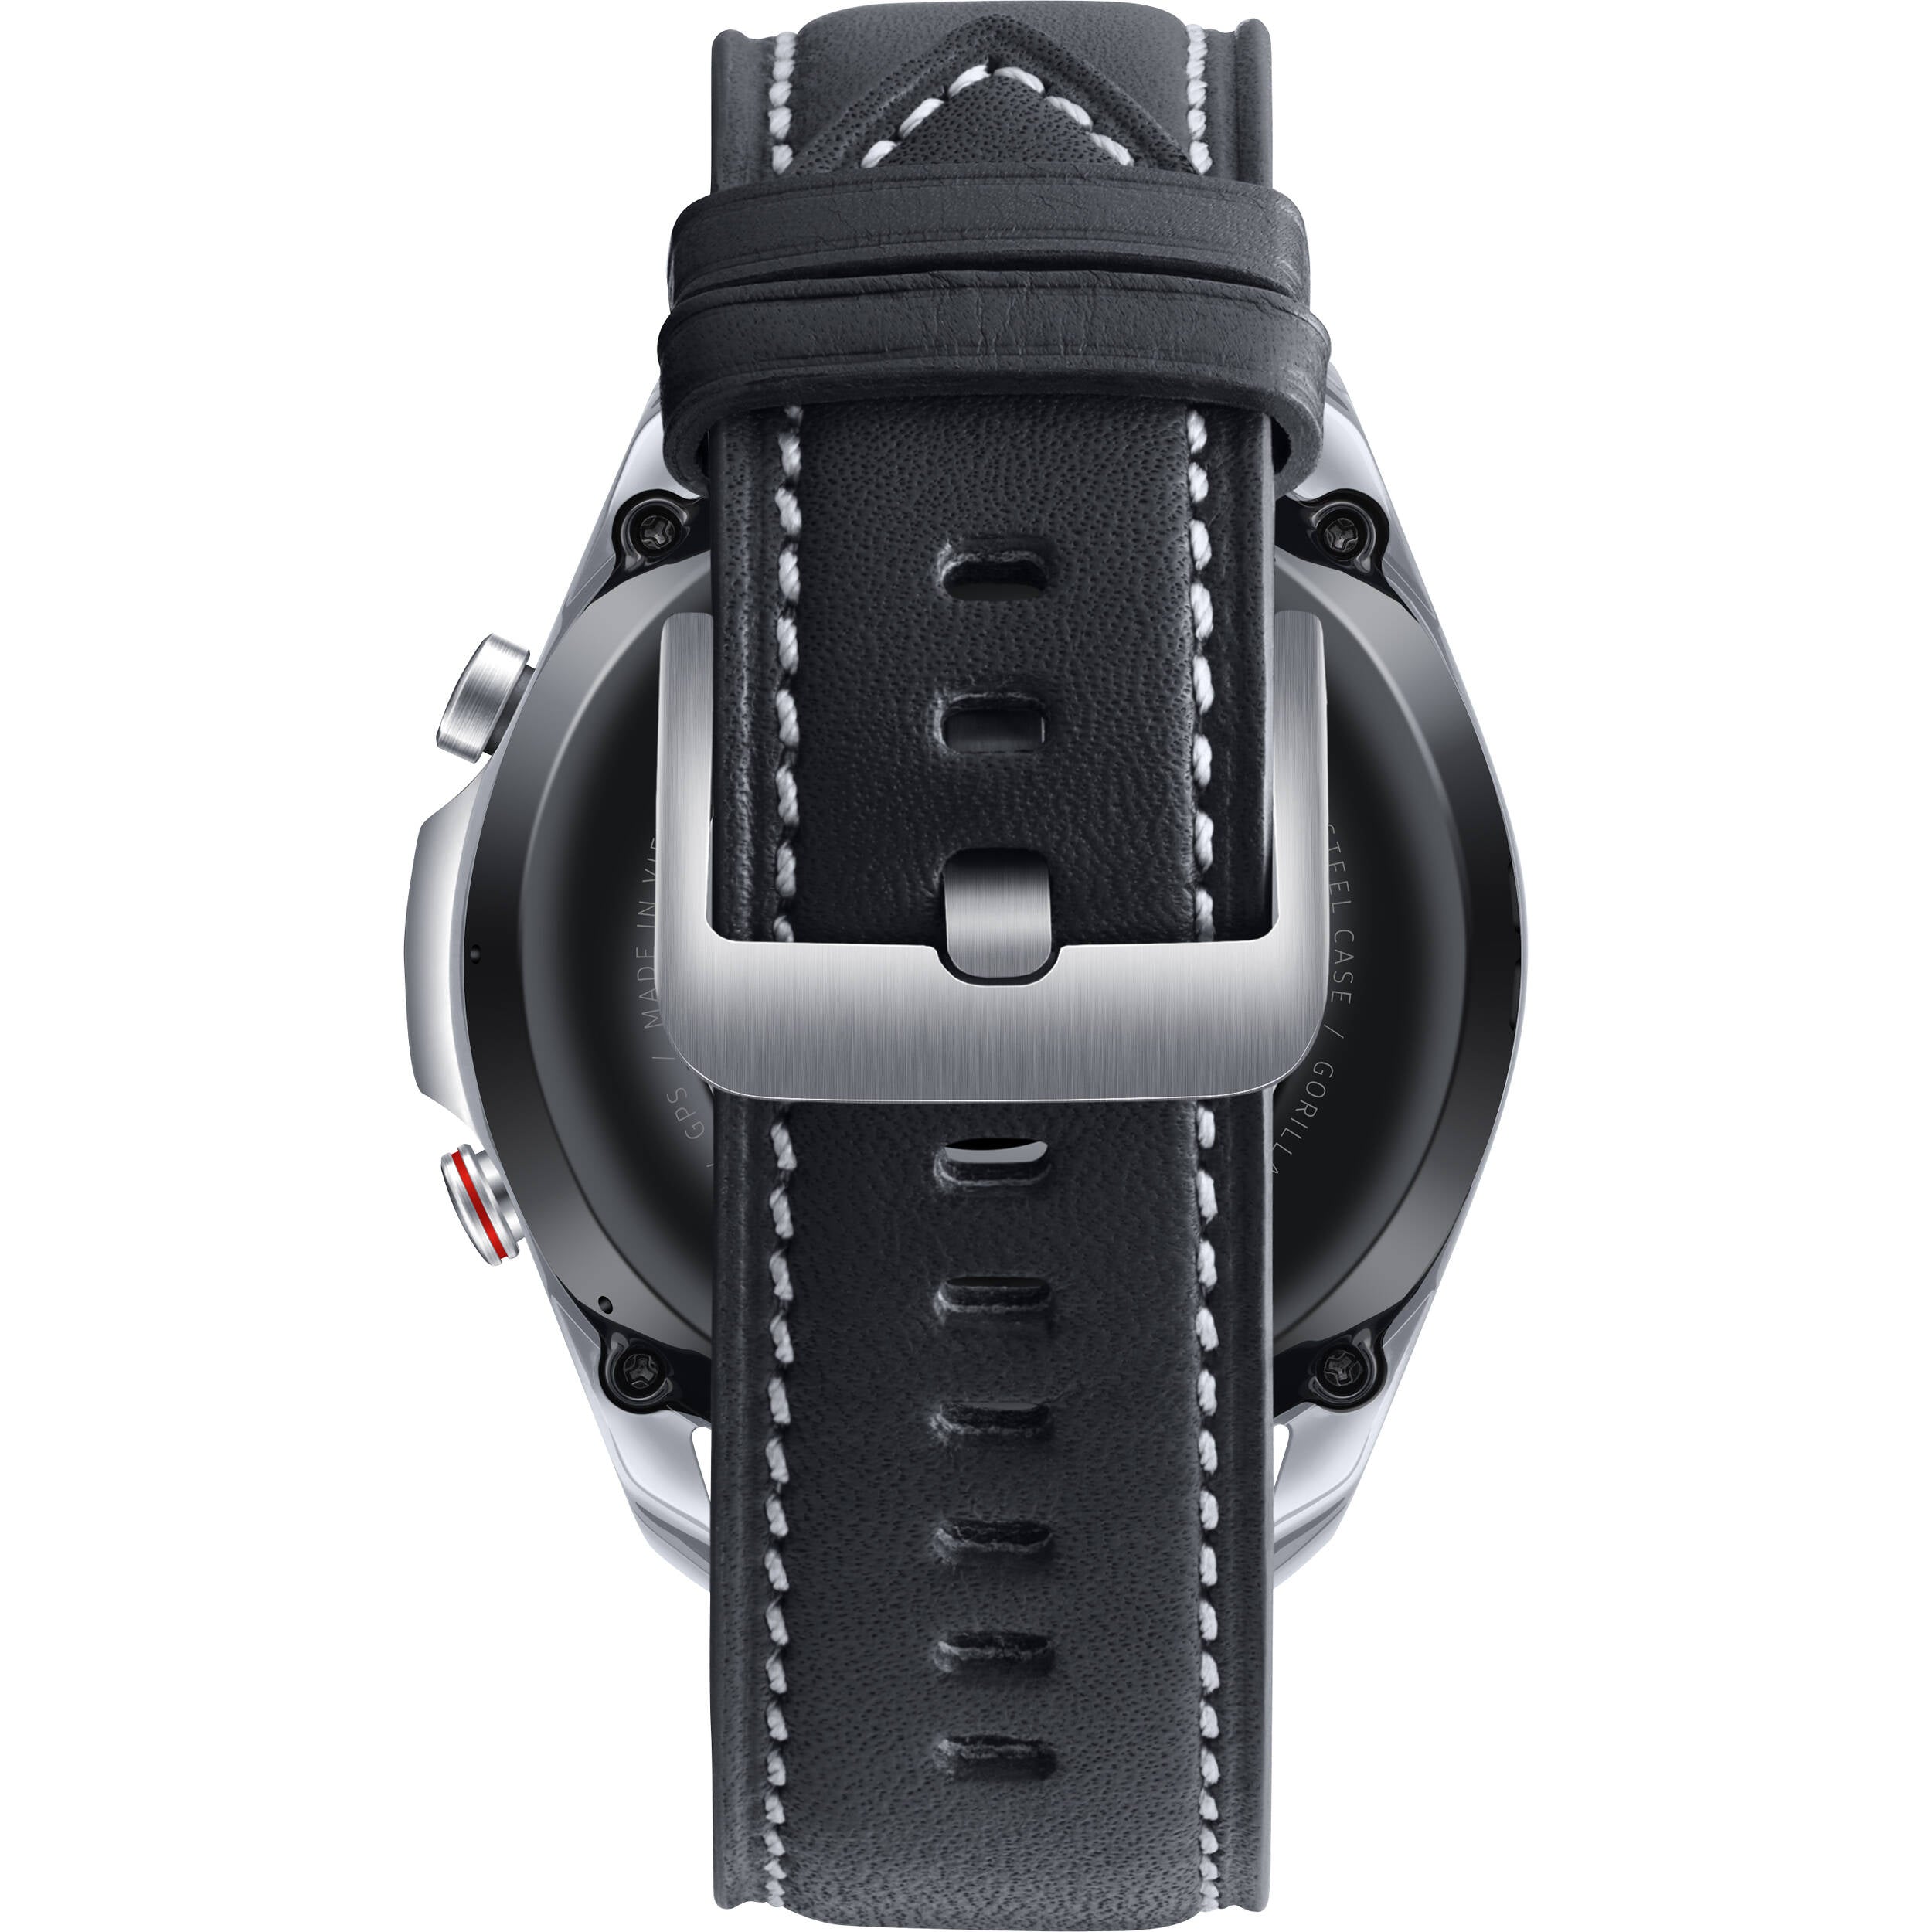 Samsung SR-SM-R840NZSAXAR-RB Galaxy Watch 3 45mm Bluetooth Silver - Seller Refurbished